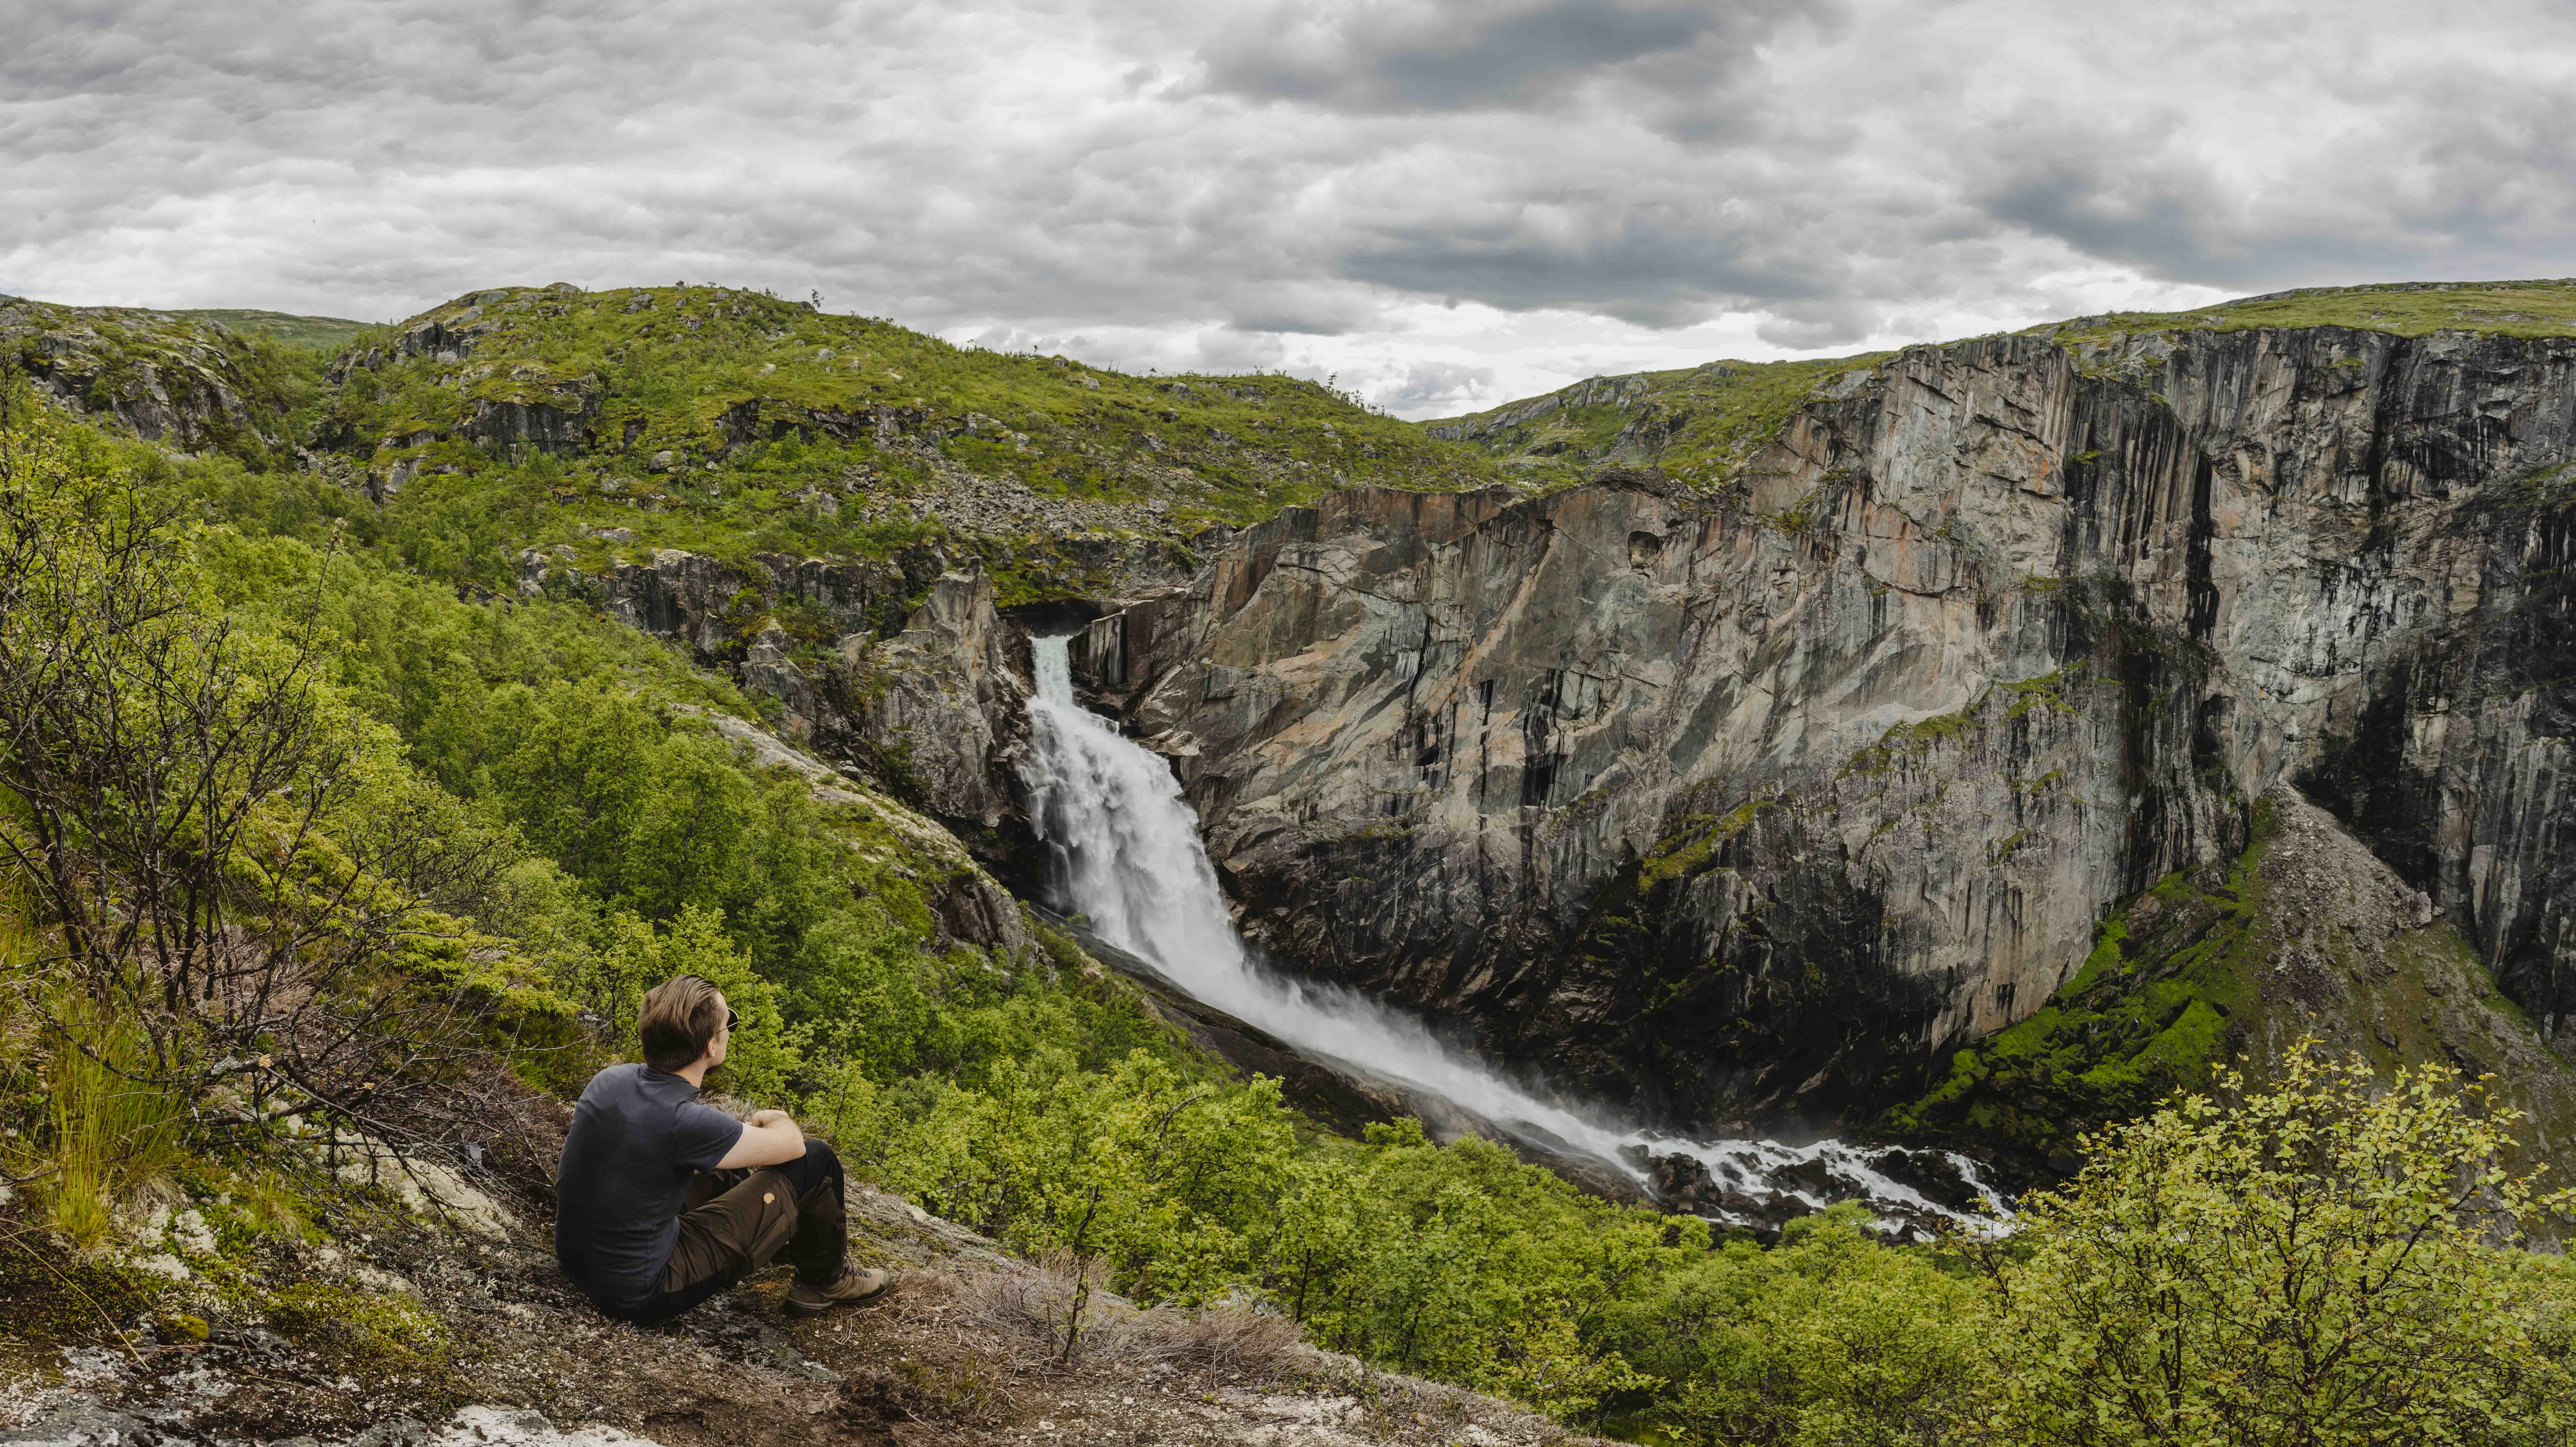 Valurfossen Waterfall